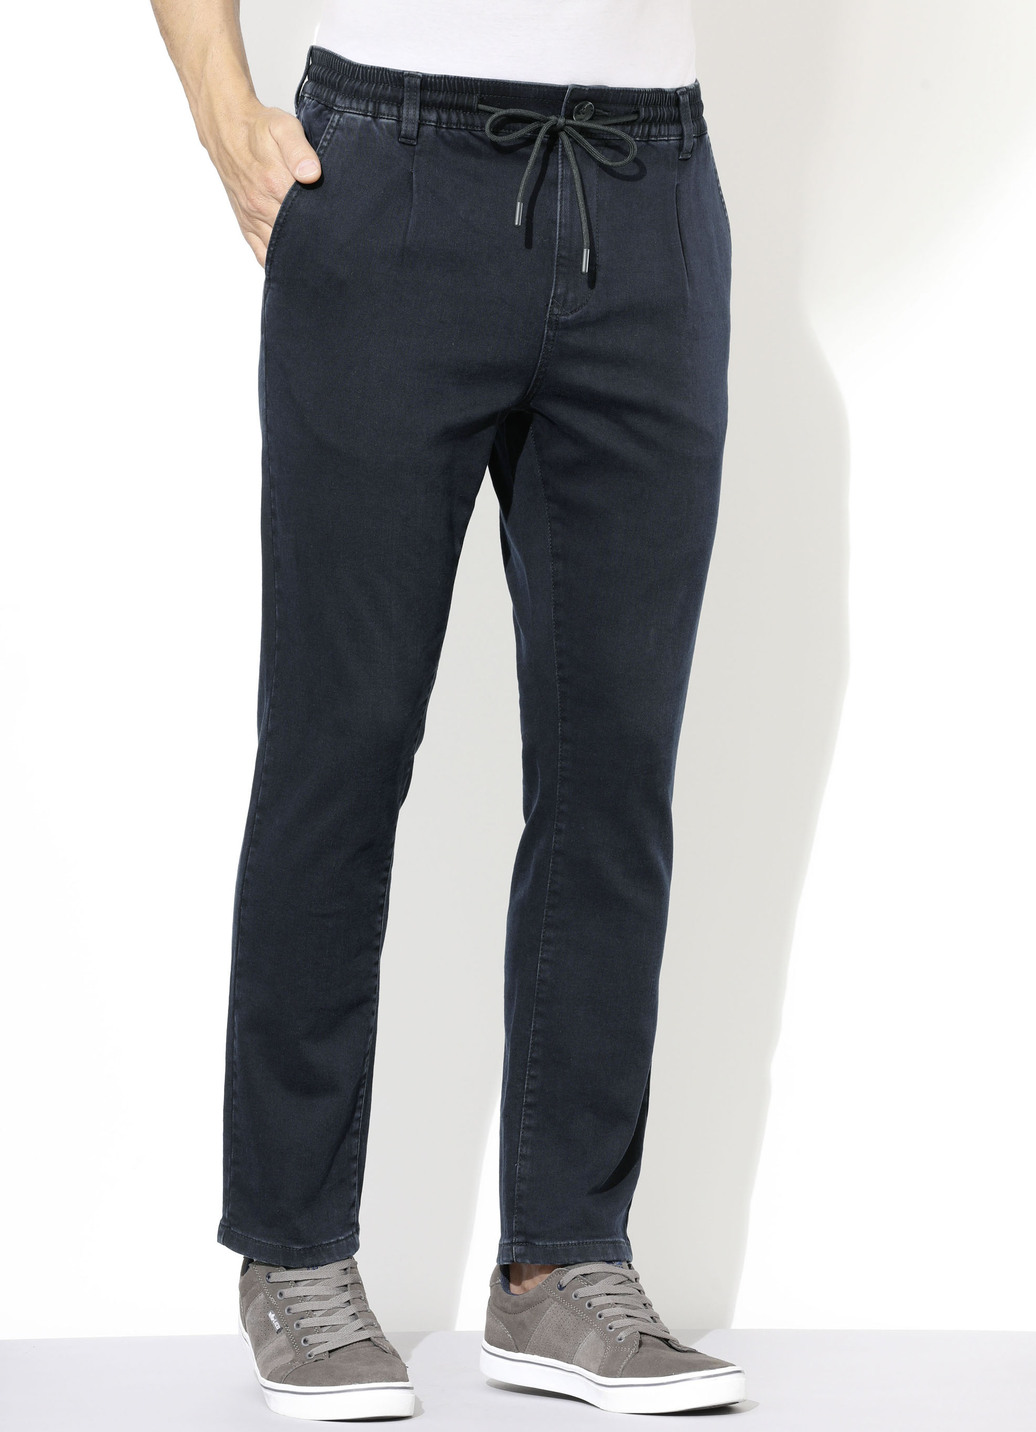 Superstretch-Jeans in 3 Farben, Dunkelblau, Größe 26 von DANNECKER